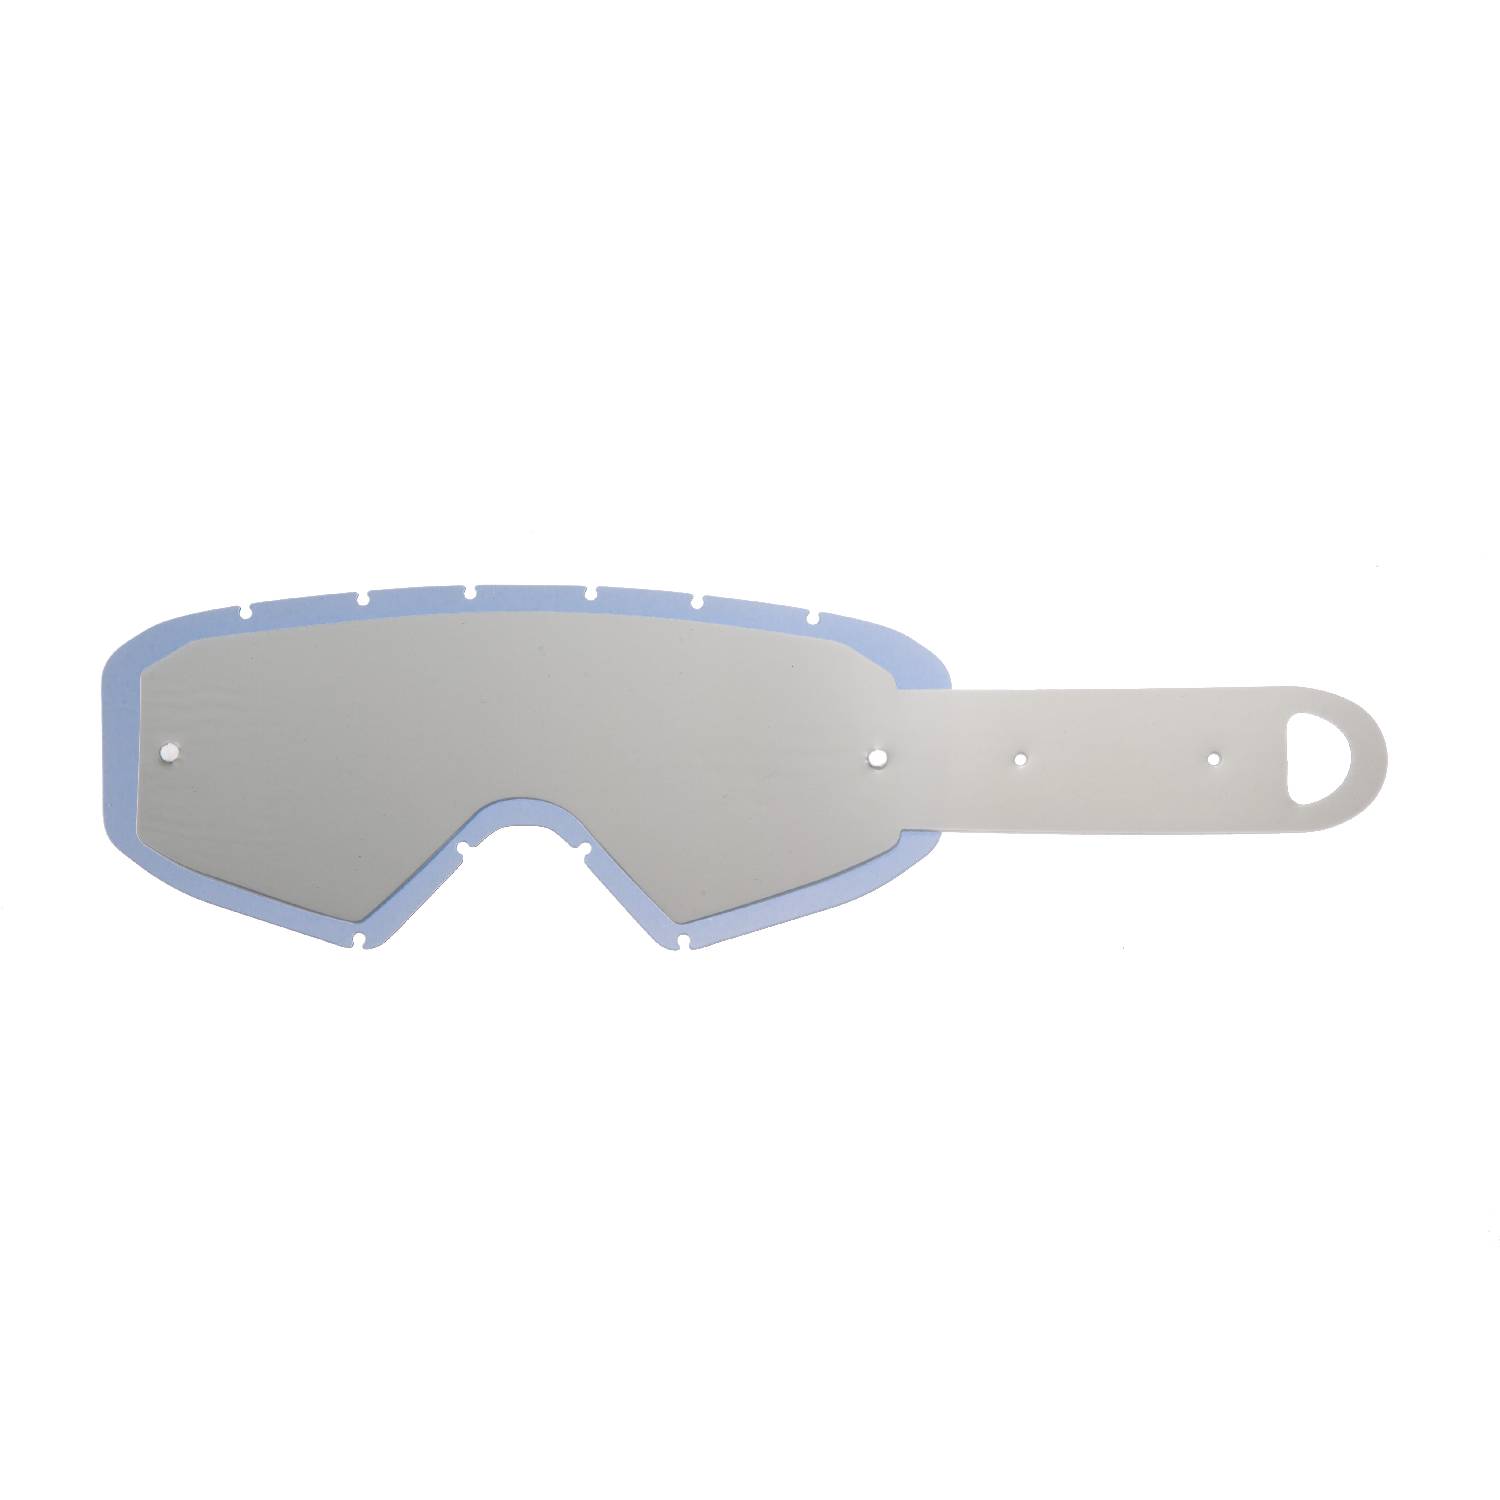 Lente fumè + 10 Strappi (Combo) compatibile per occhiale/maschera cross Ethen Zerocinque Primis / R / Ares / Ares Pluma